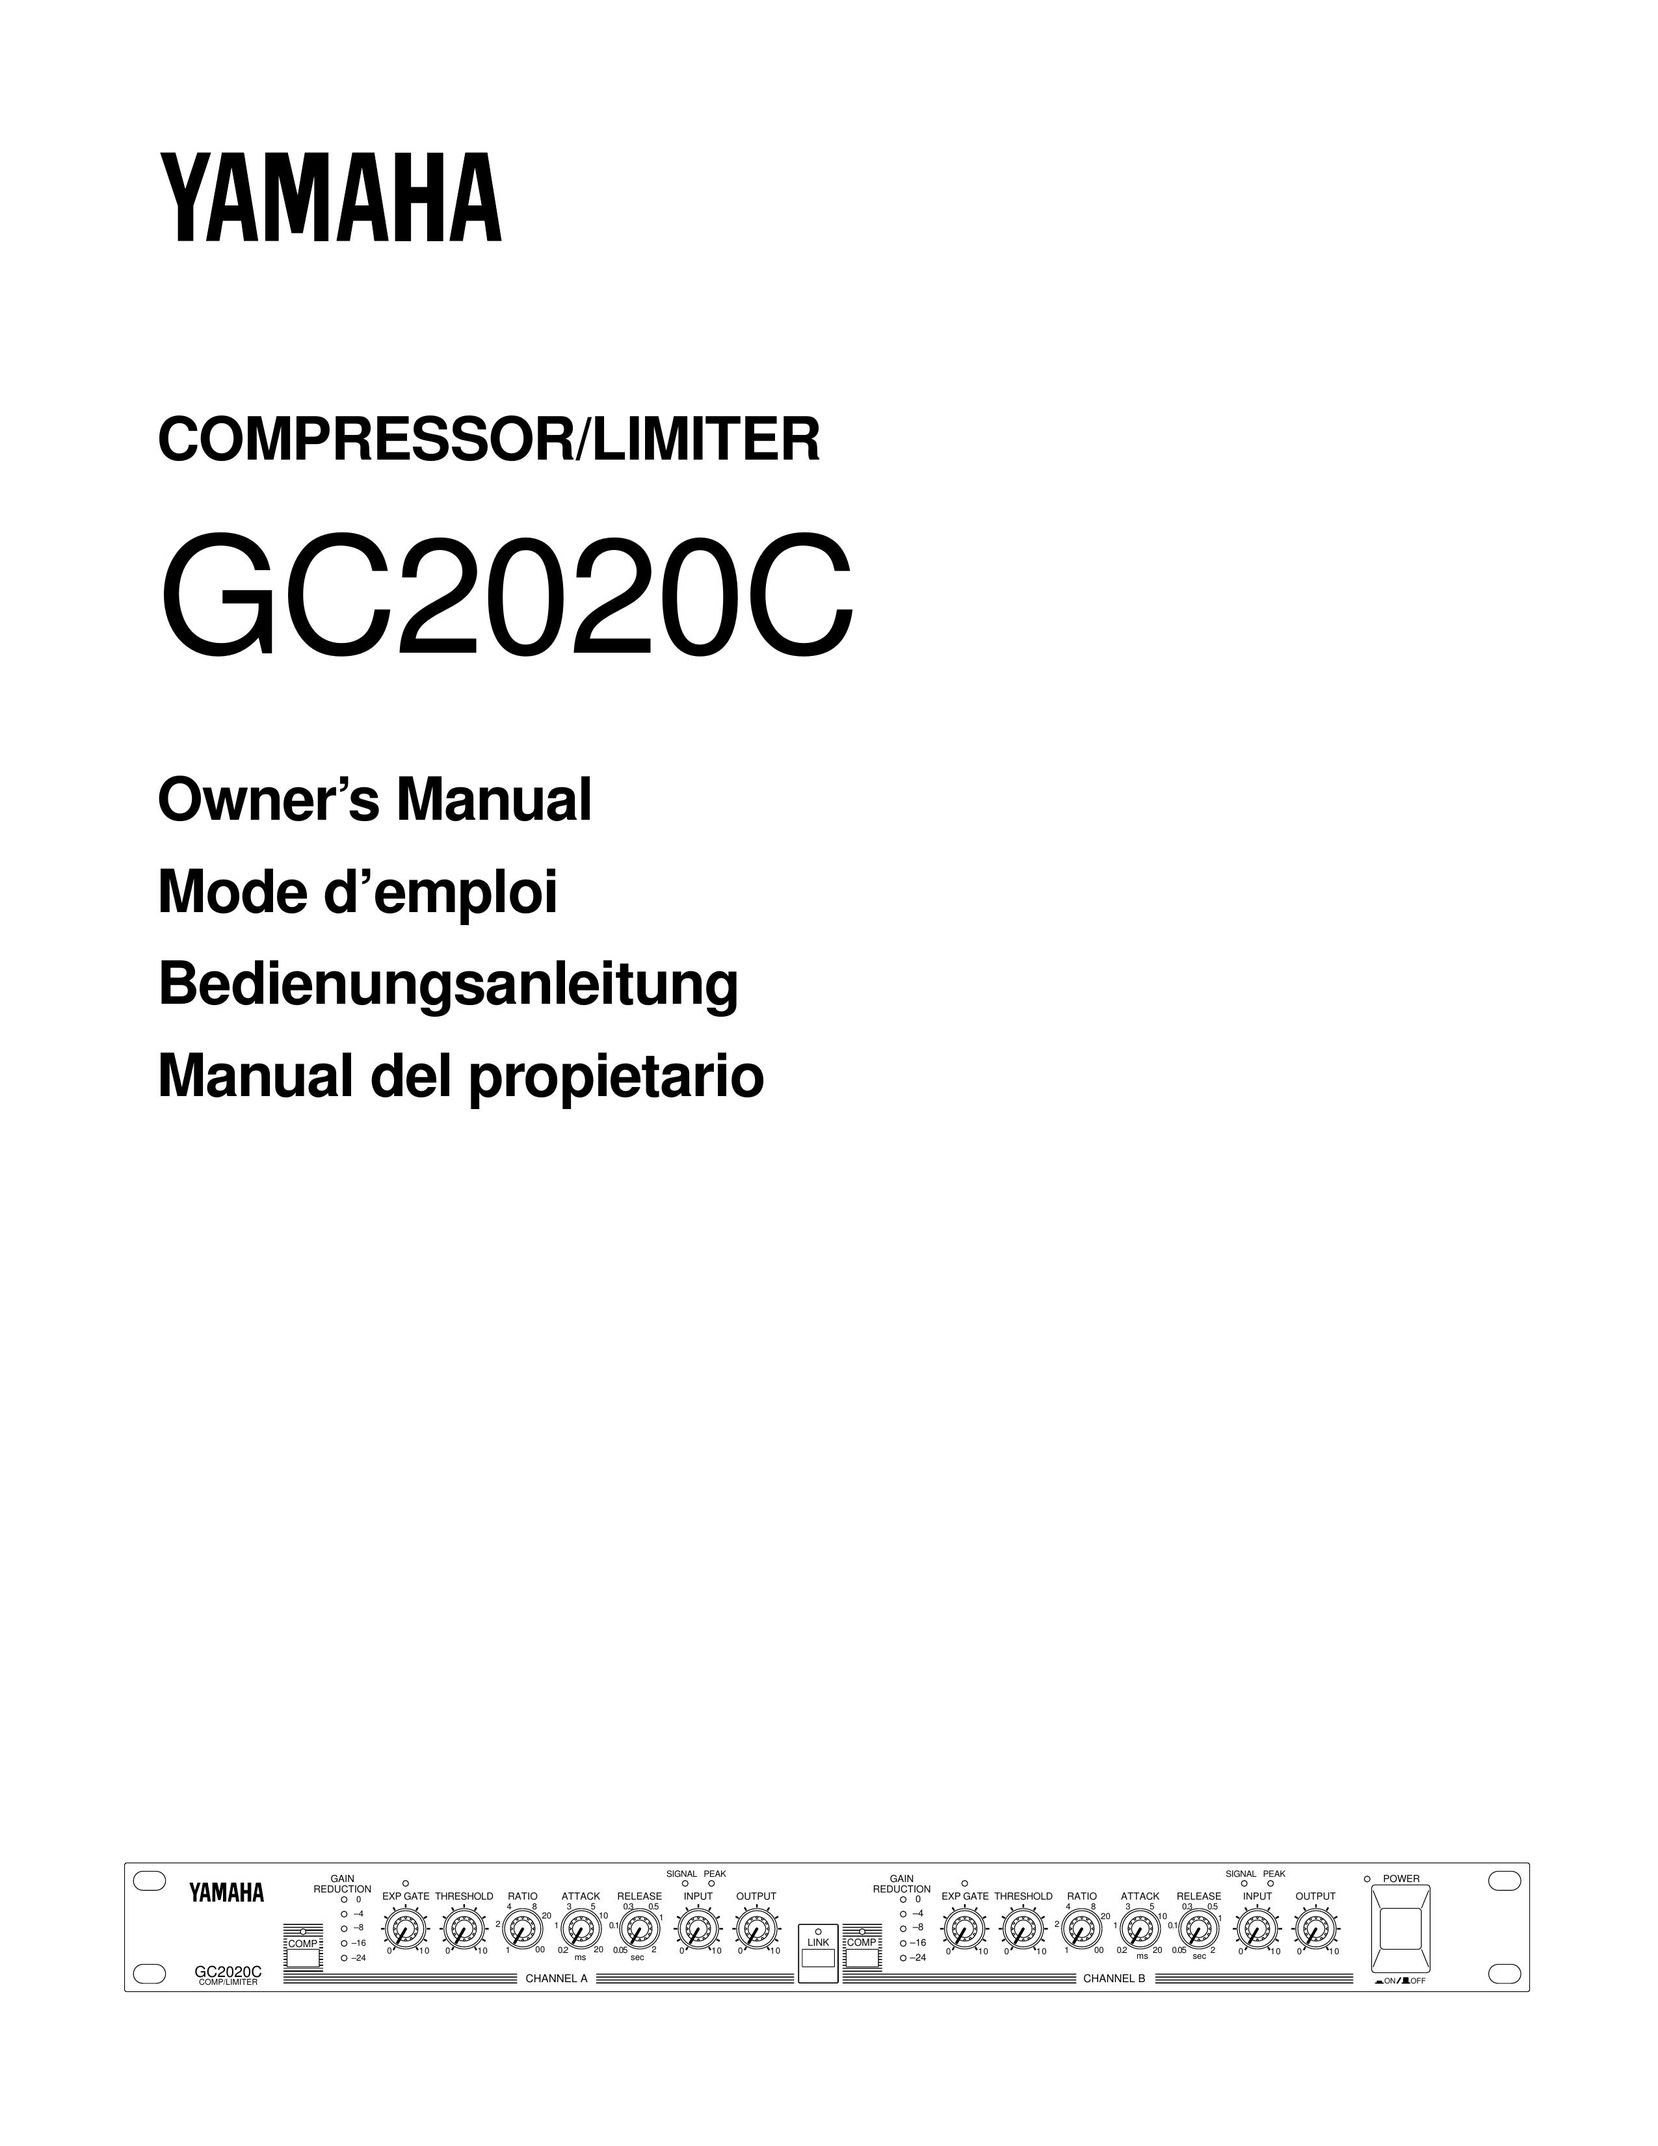 Yamaha GC2020C Air Compressor User Manual